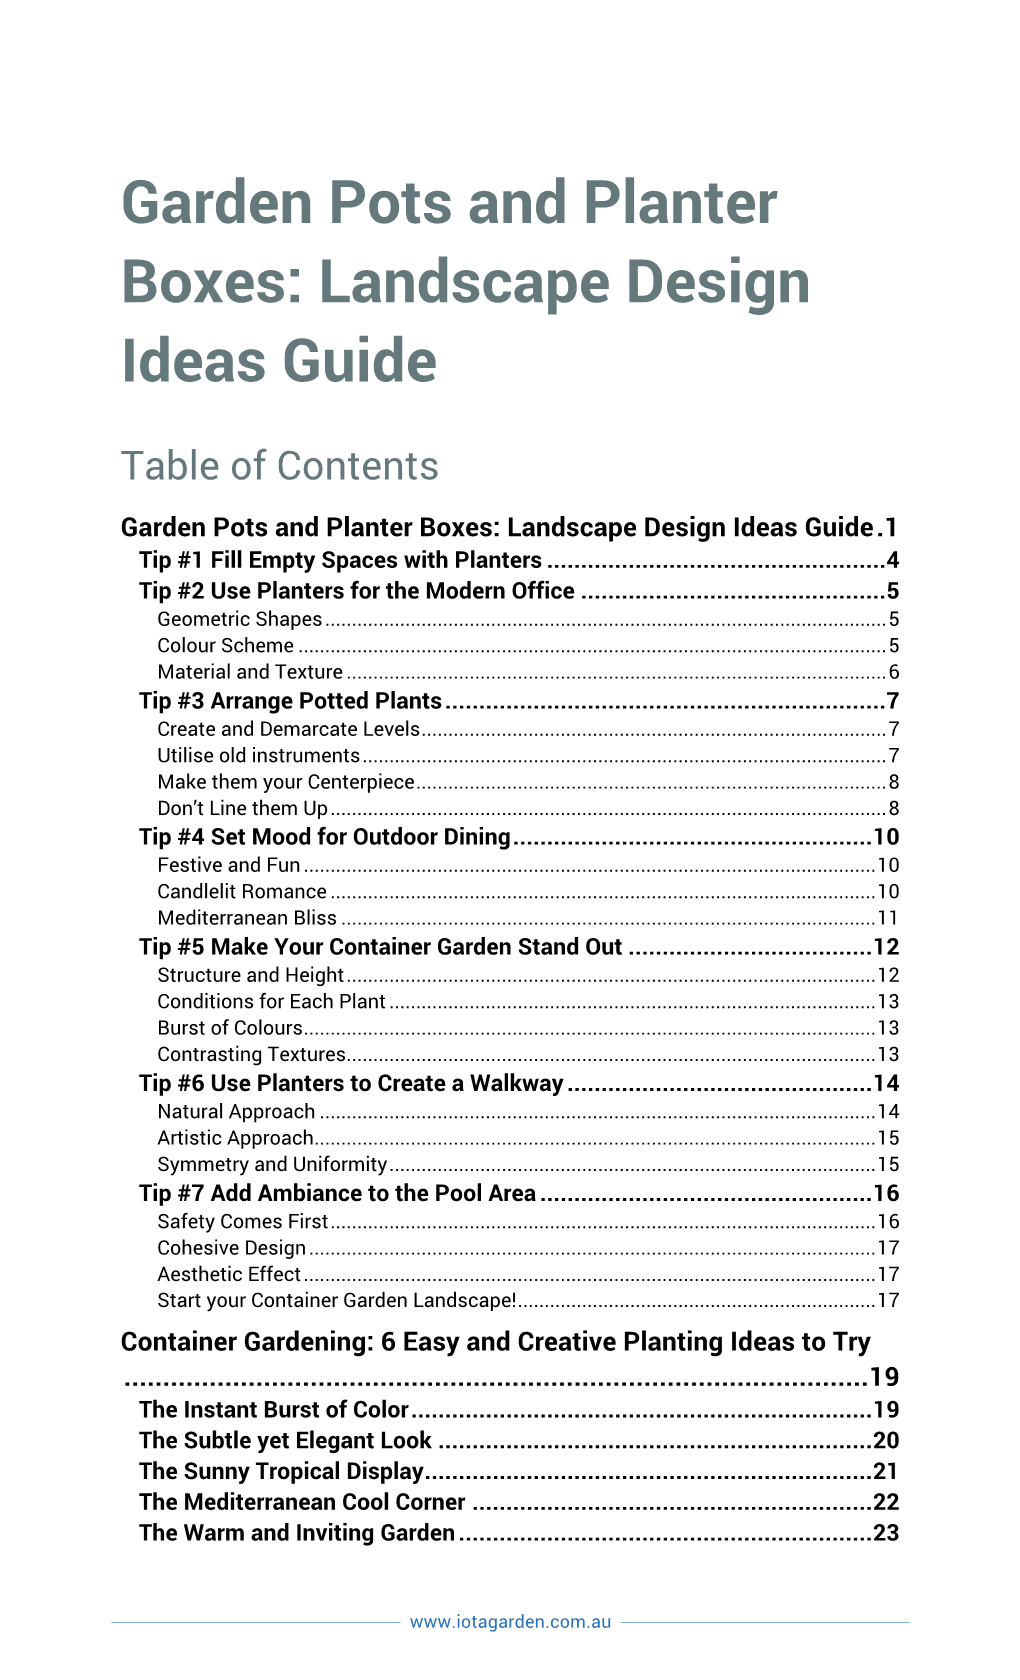 Garden Pots and Planter Boxes Landscape Design Ideas Guide